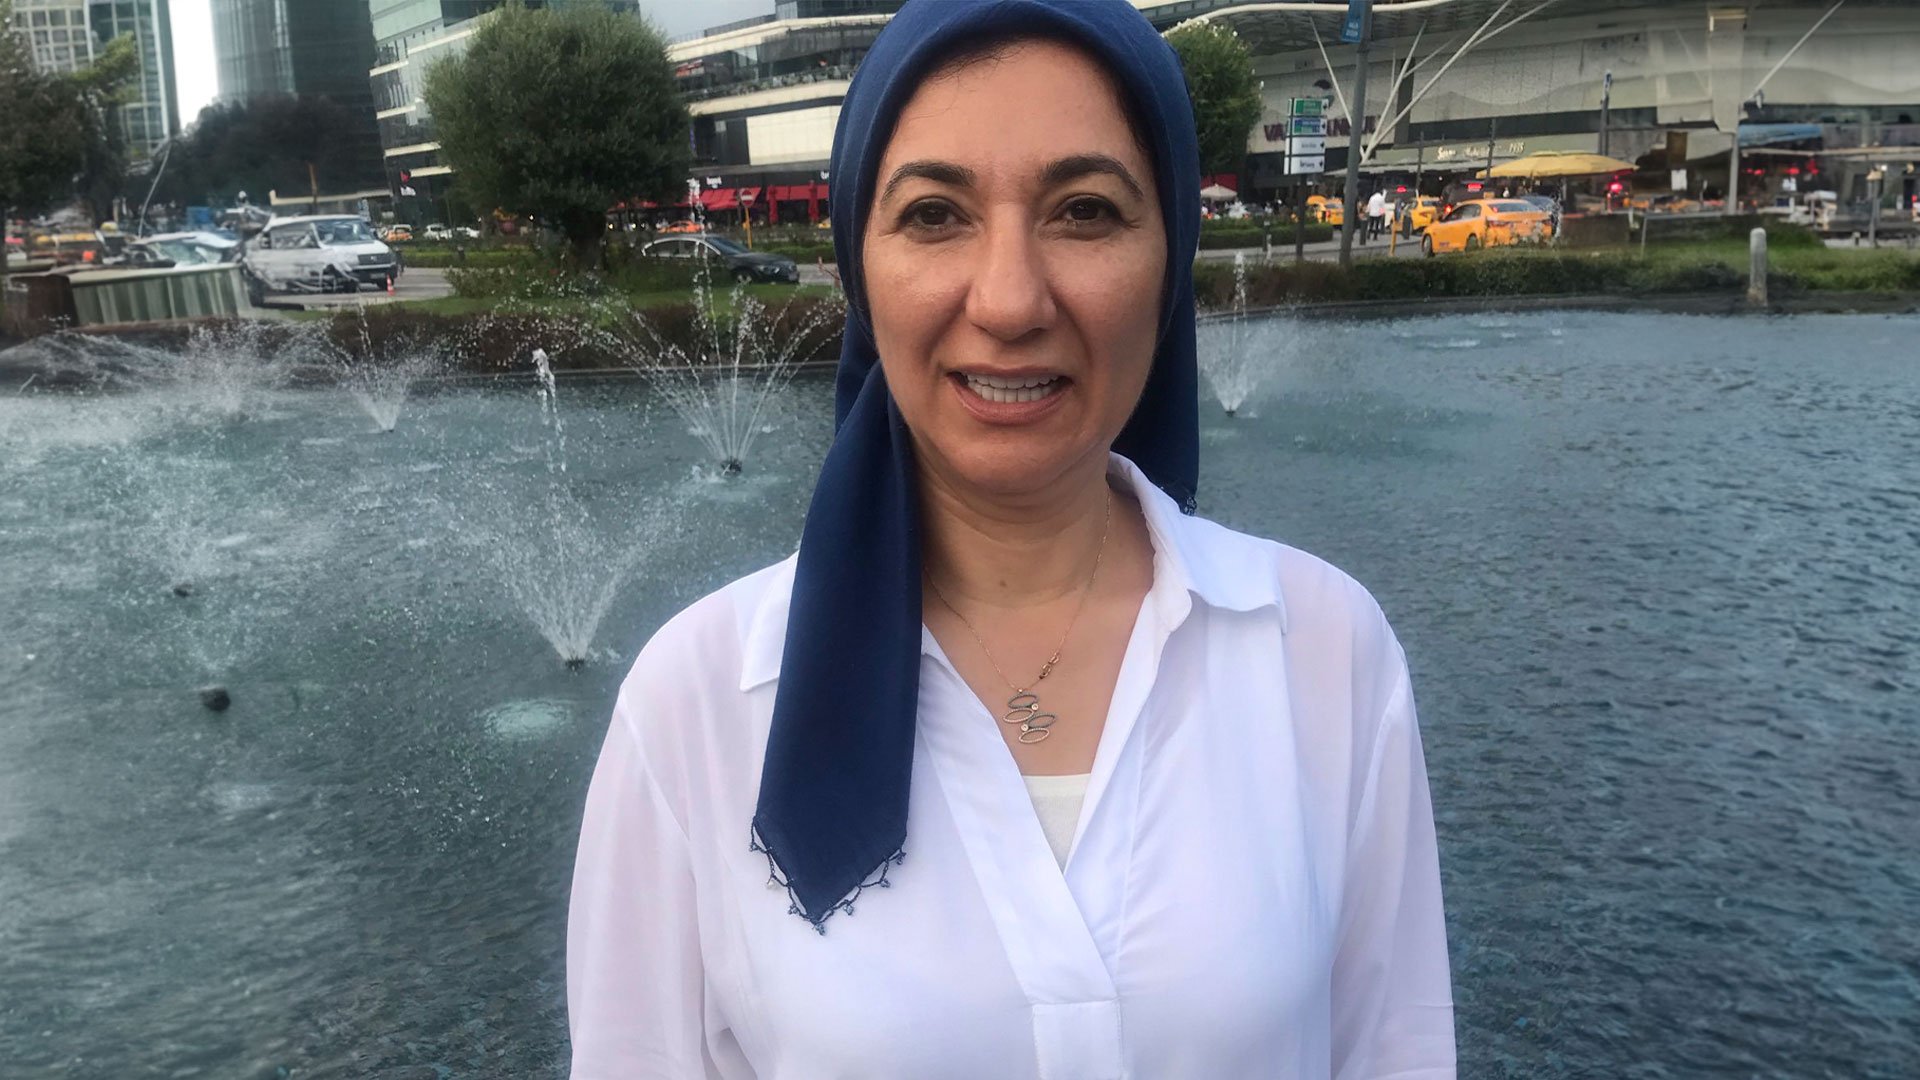 سبب اعتقال غادة نجيب الناشطة السياسية في تركيا